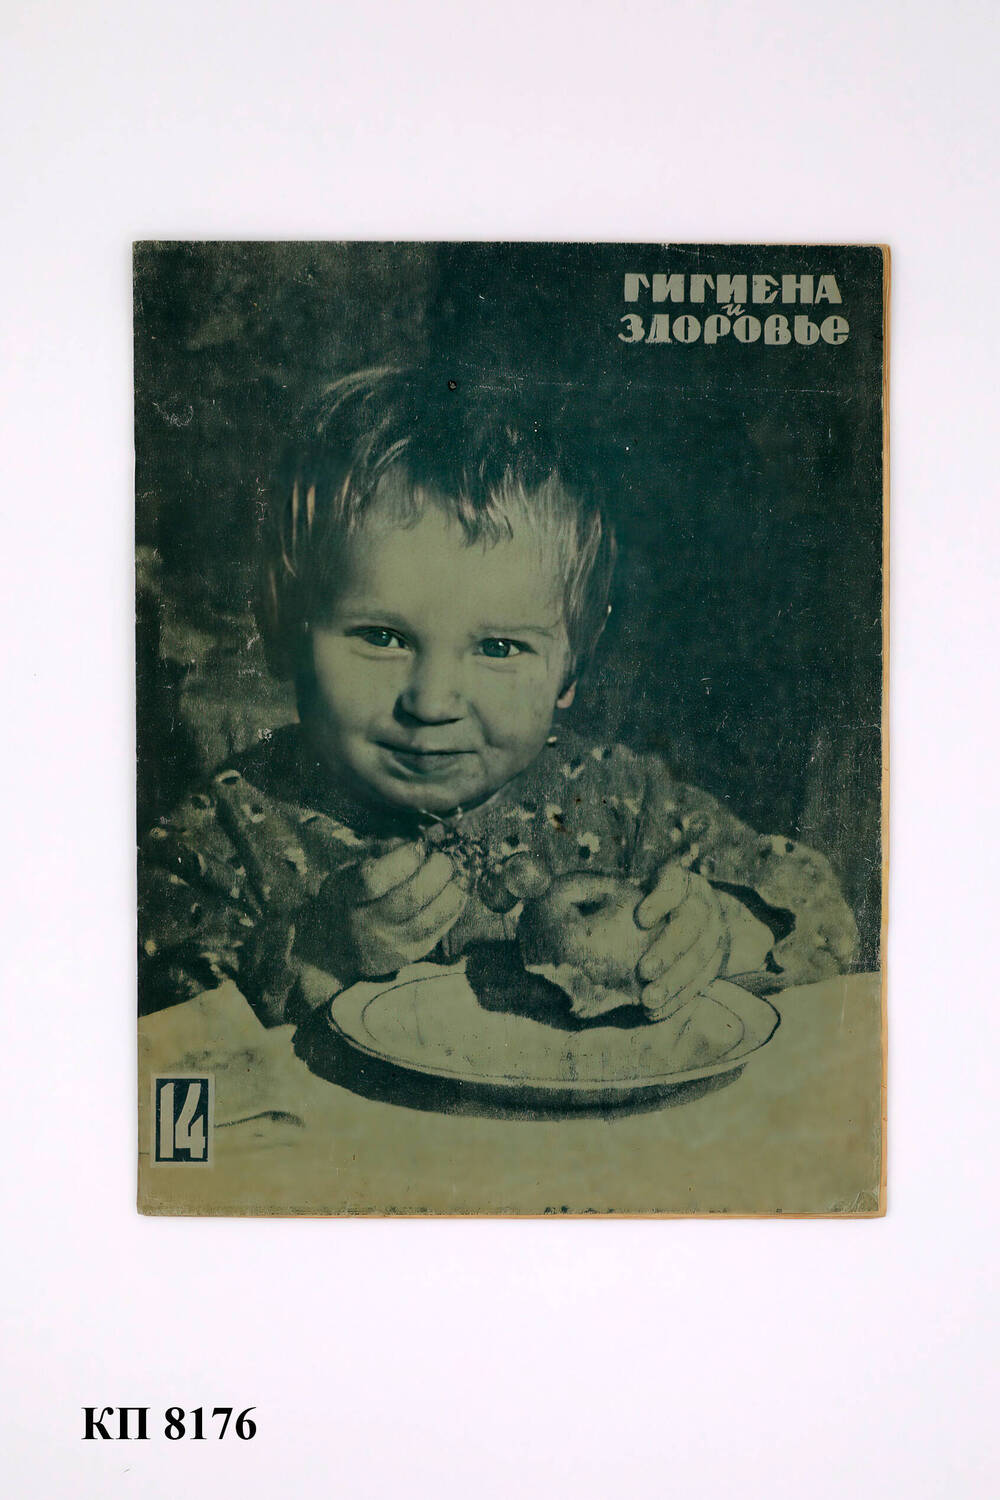 Журнал «Гигиена и здоровье» № 14 июль 1937 г